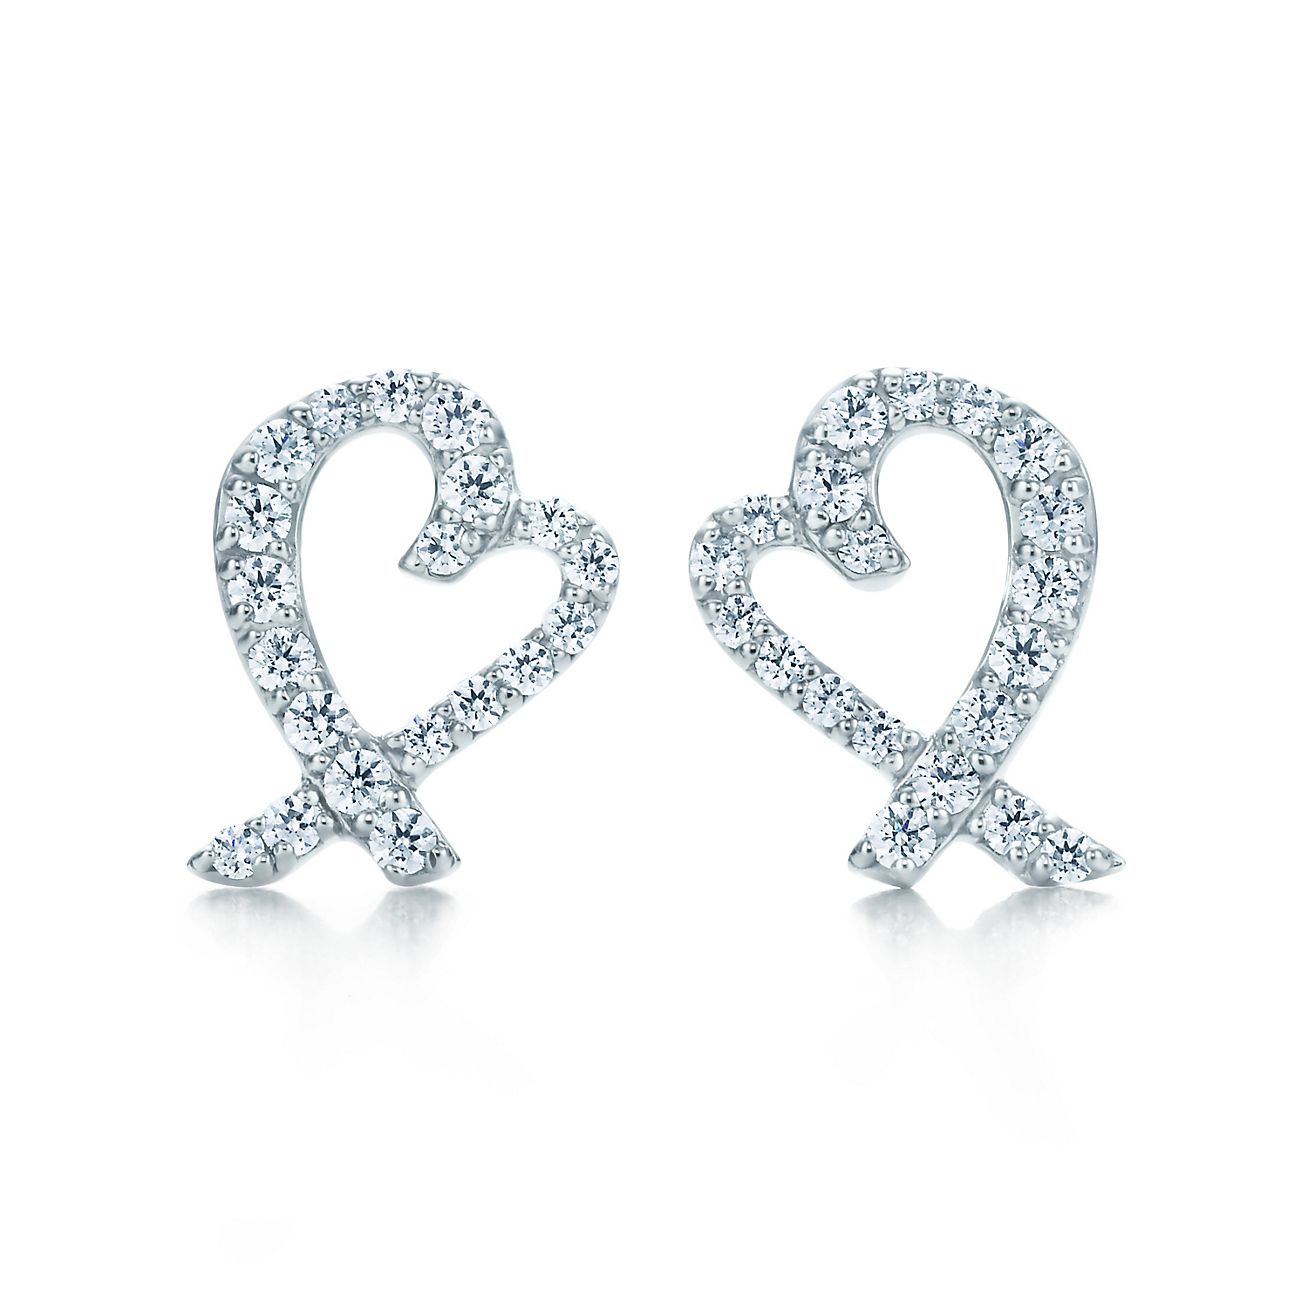 love heart tiffany earrings